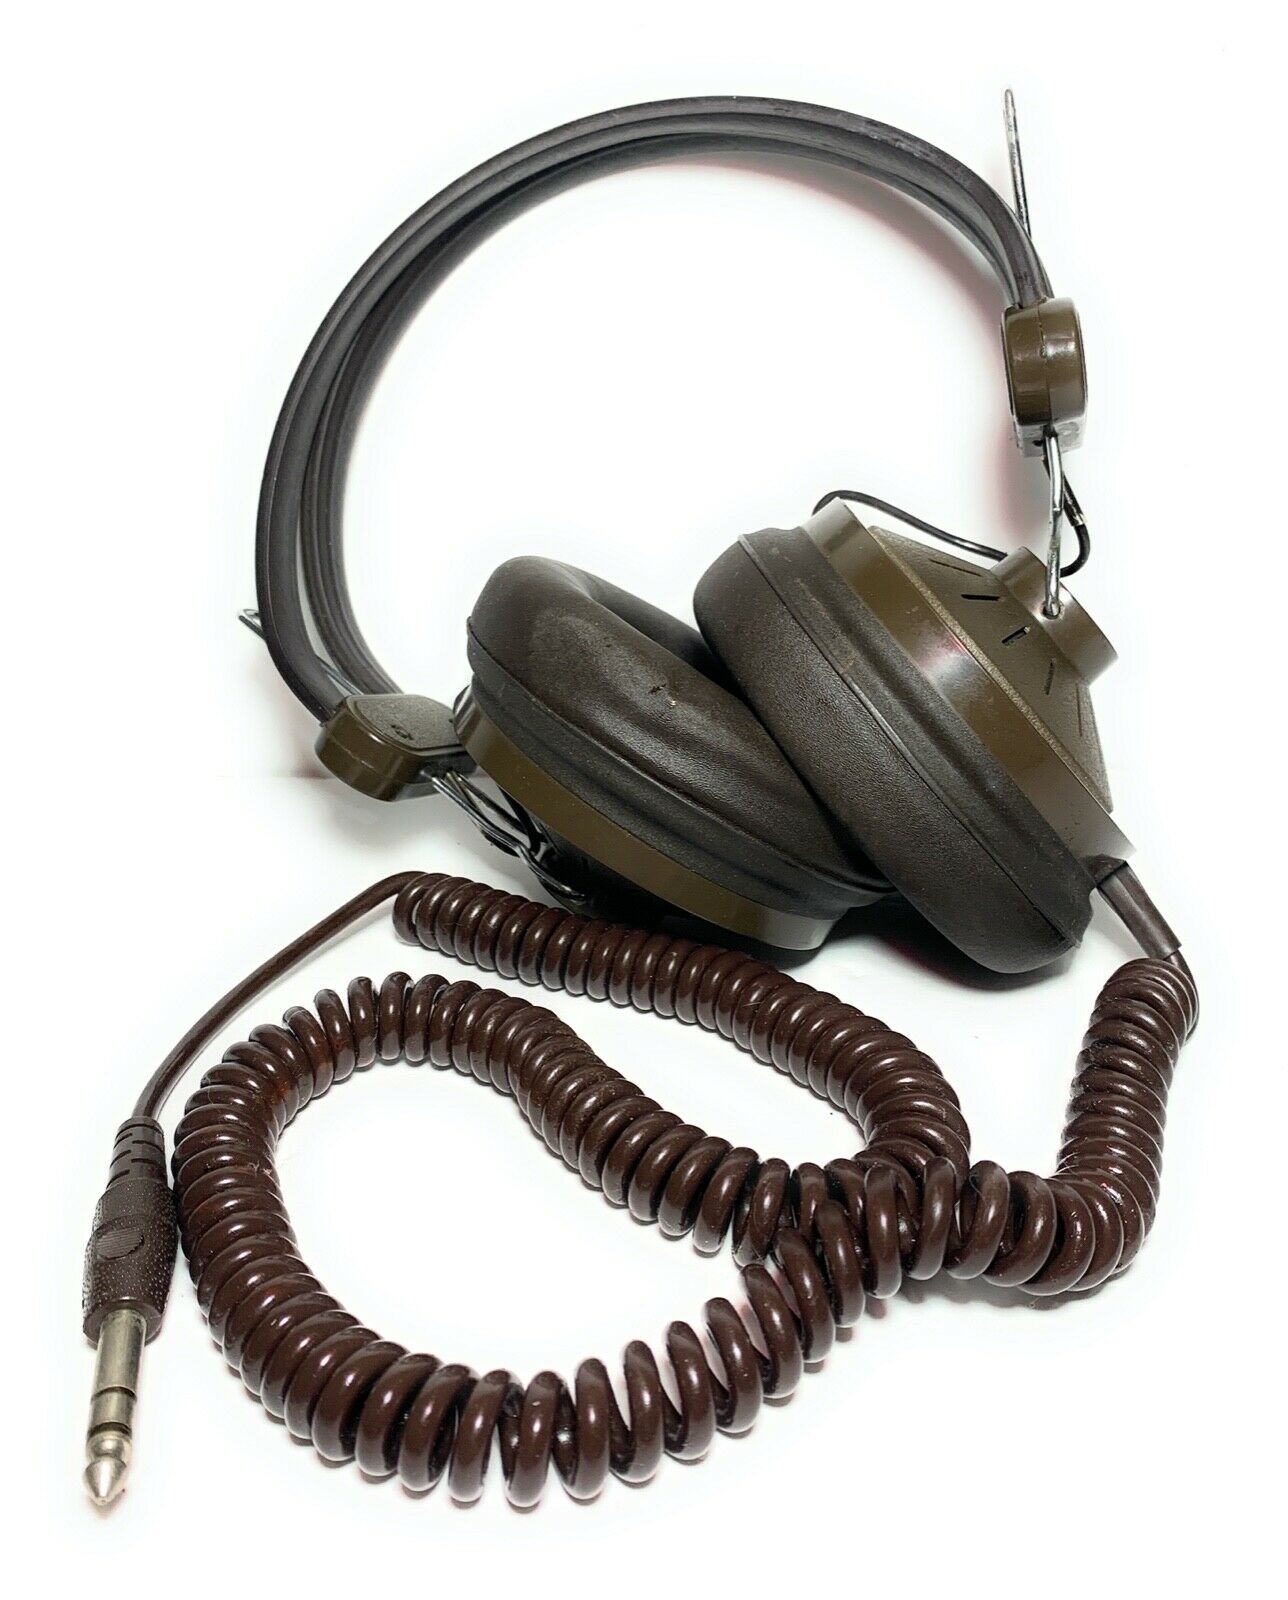 Vintage Sound Design Stereo Headphones Brown Model 335 Japan Untested